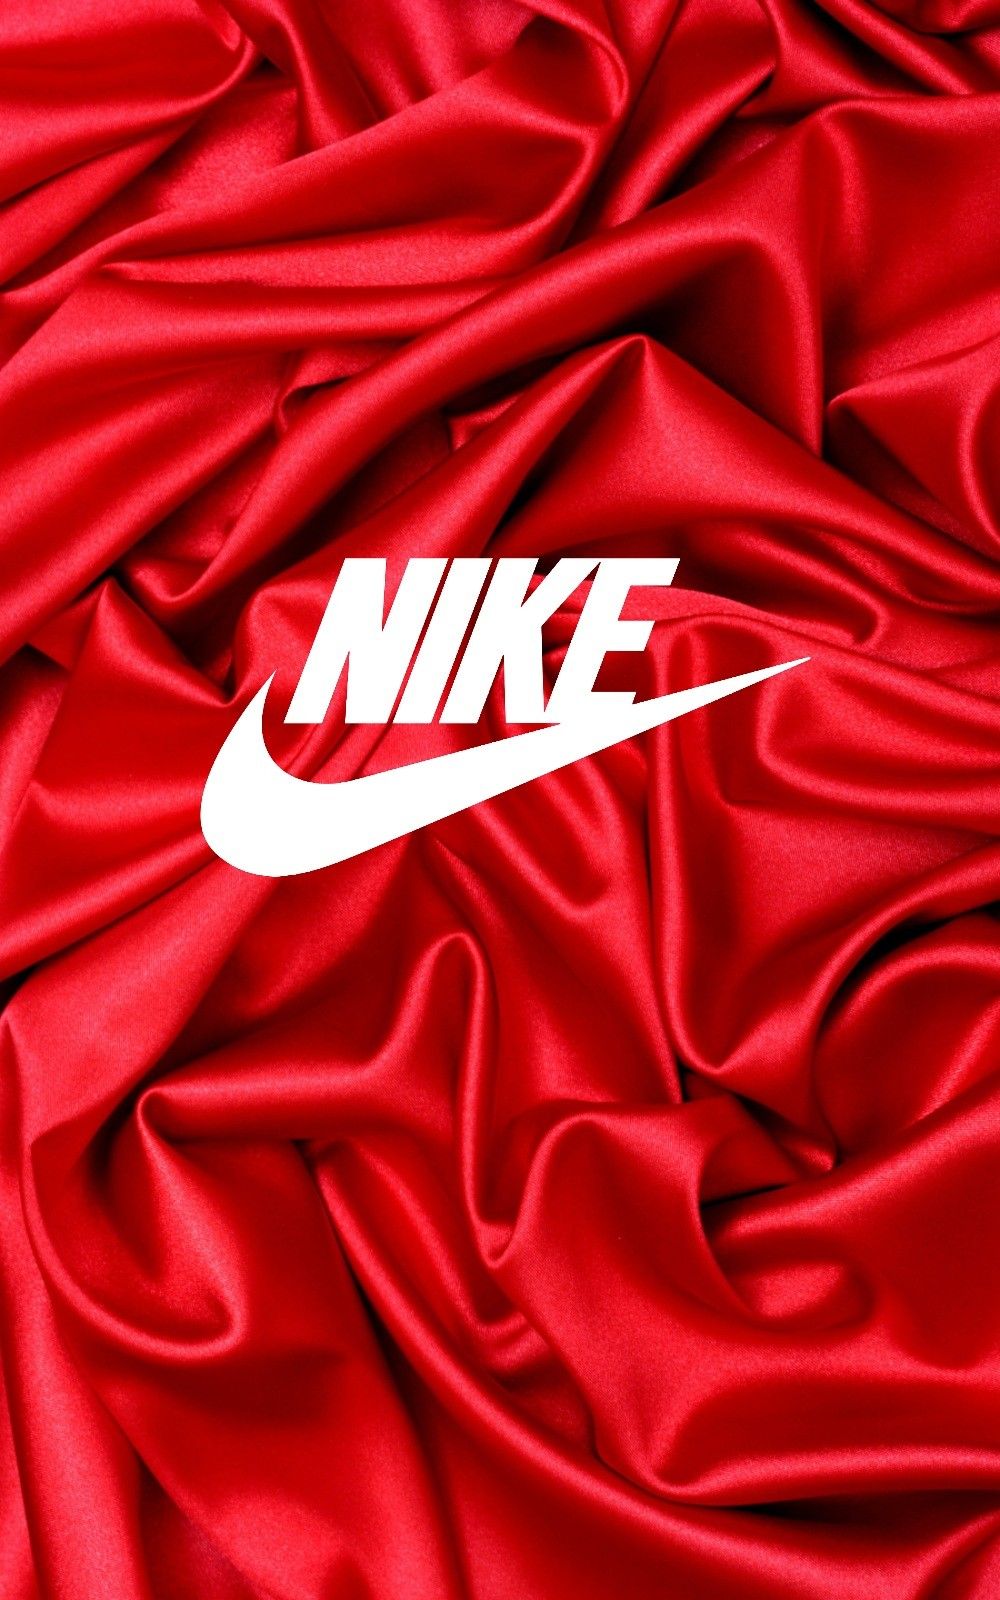 Everything NIKE Red NIKE wallpaper. Nike wallpaper, Nike logo wallpaper, Cool nike wallpaper